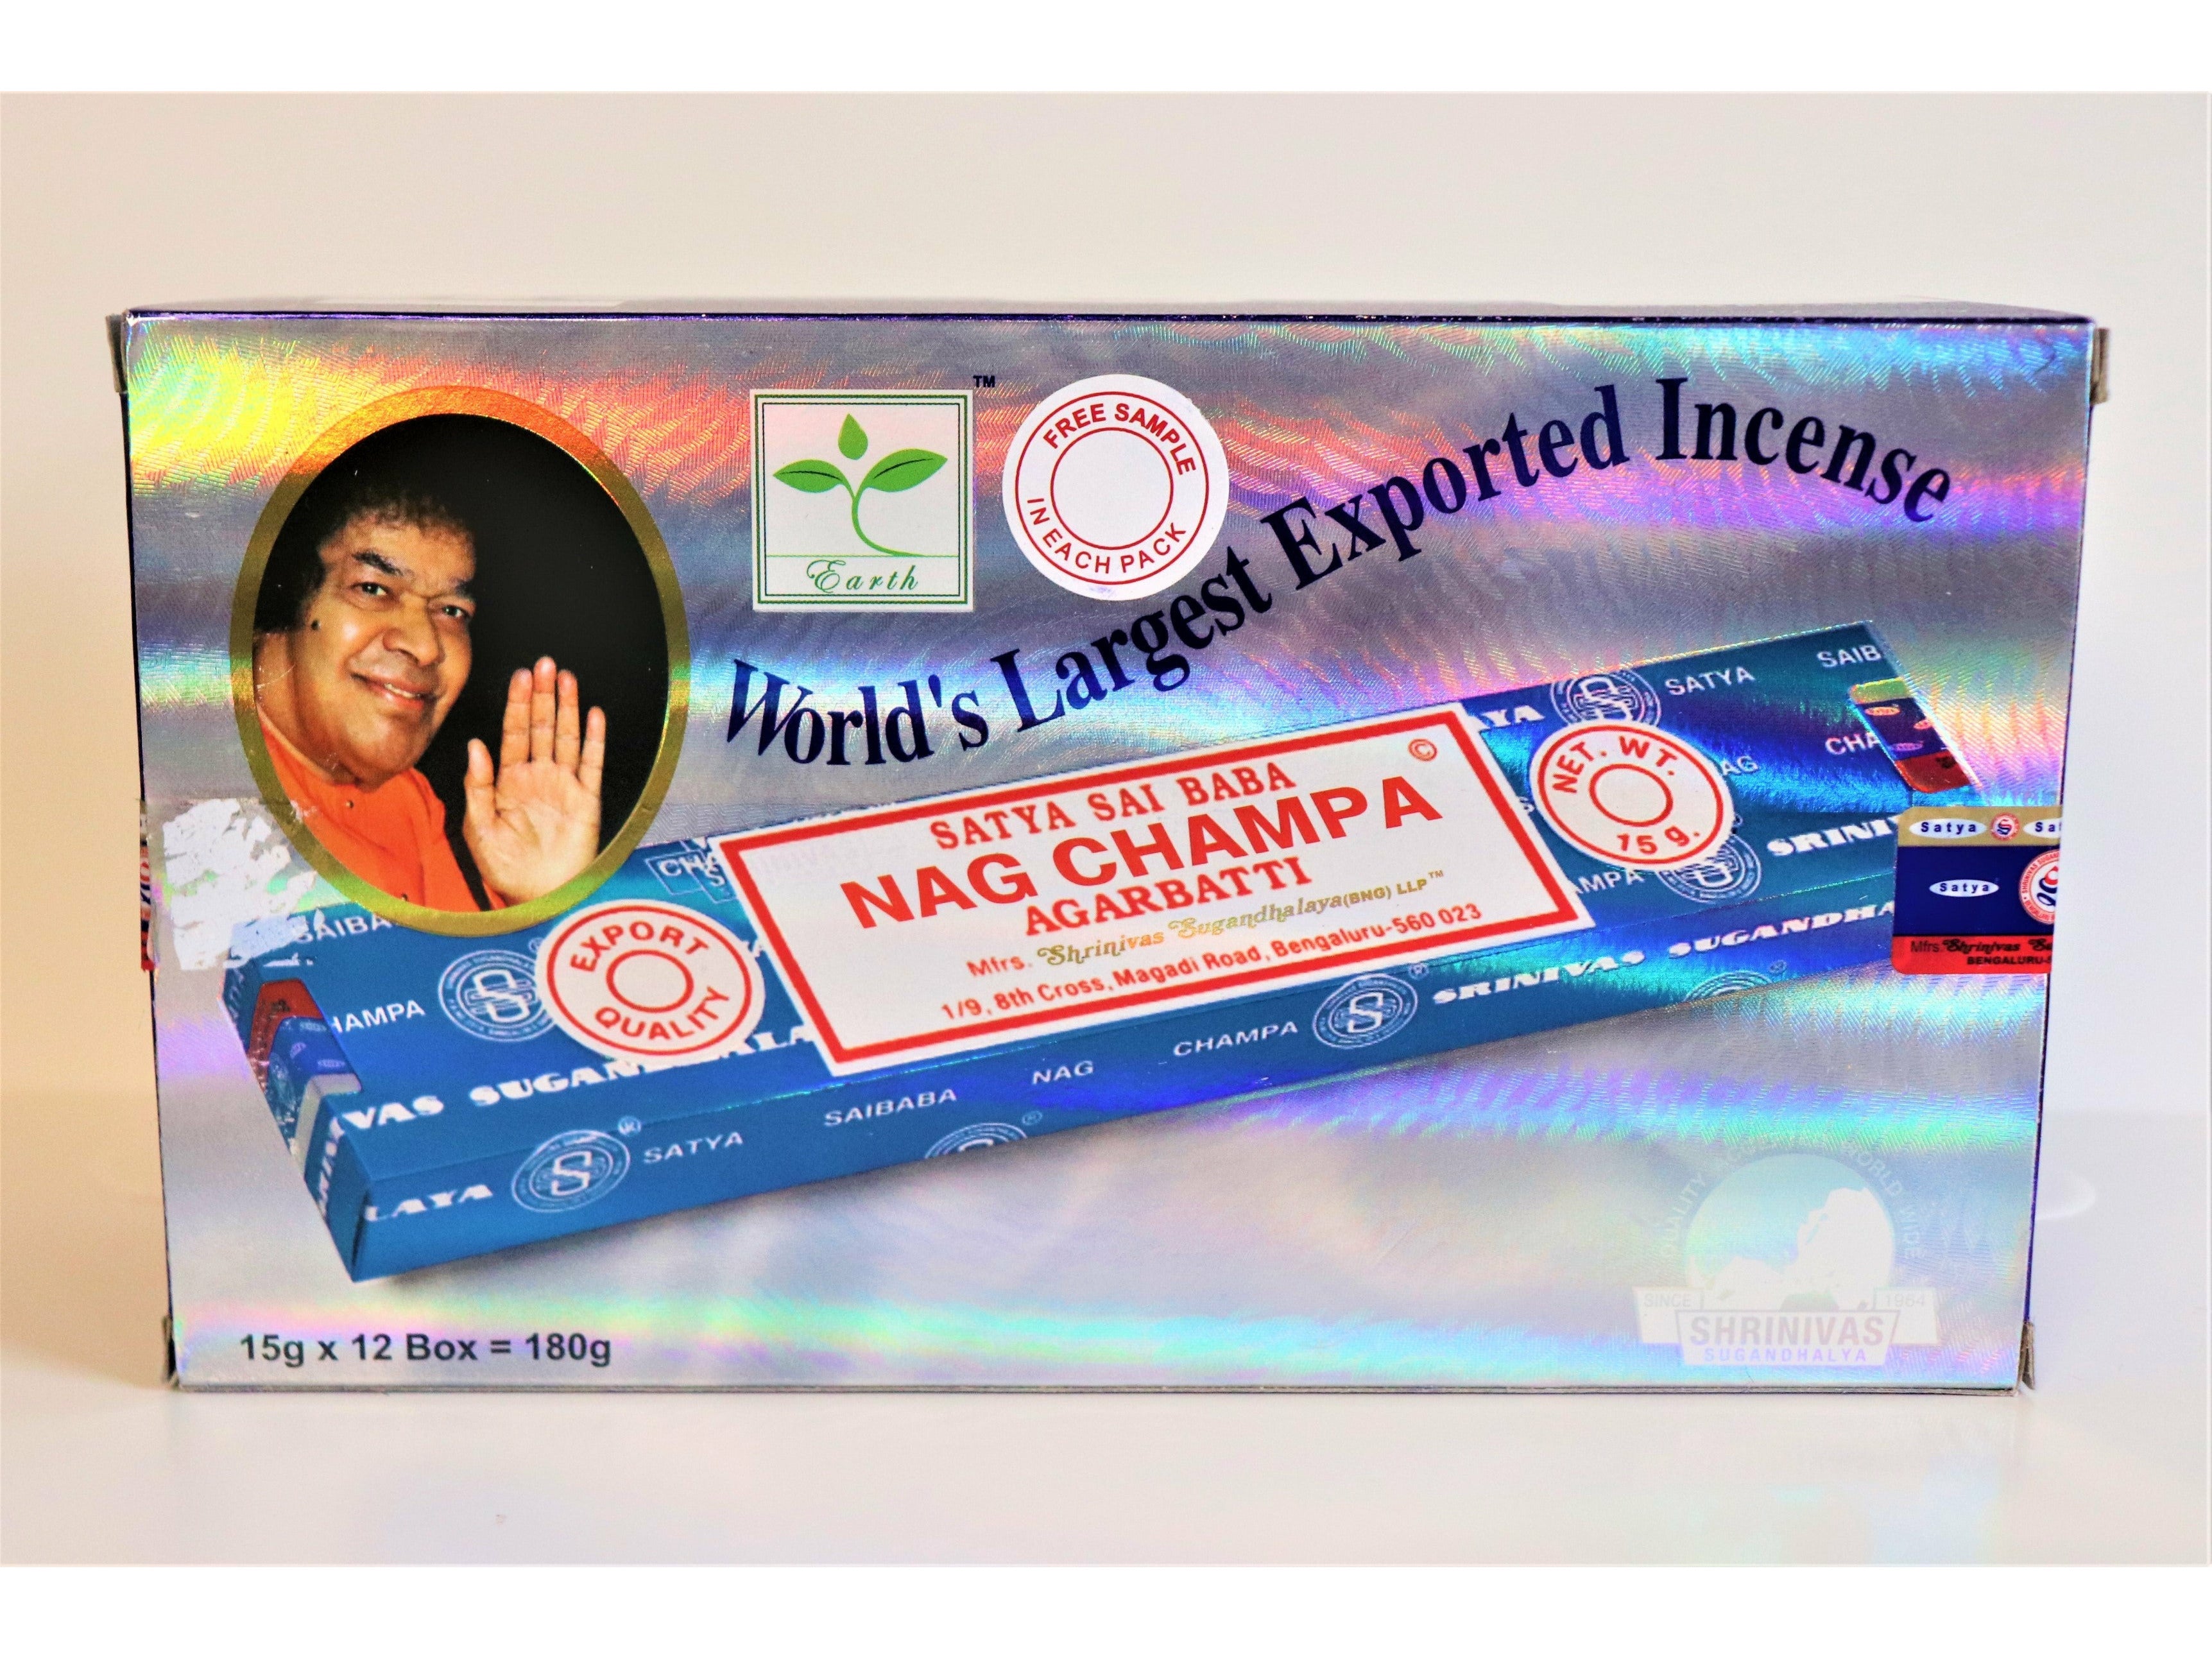 Satya Sai Baba Nag Champa Incense Sticks 15G 2 Packs By Nag Champa